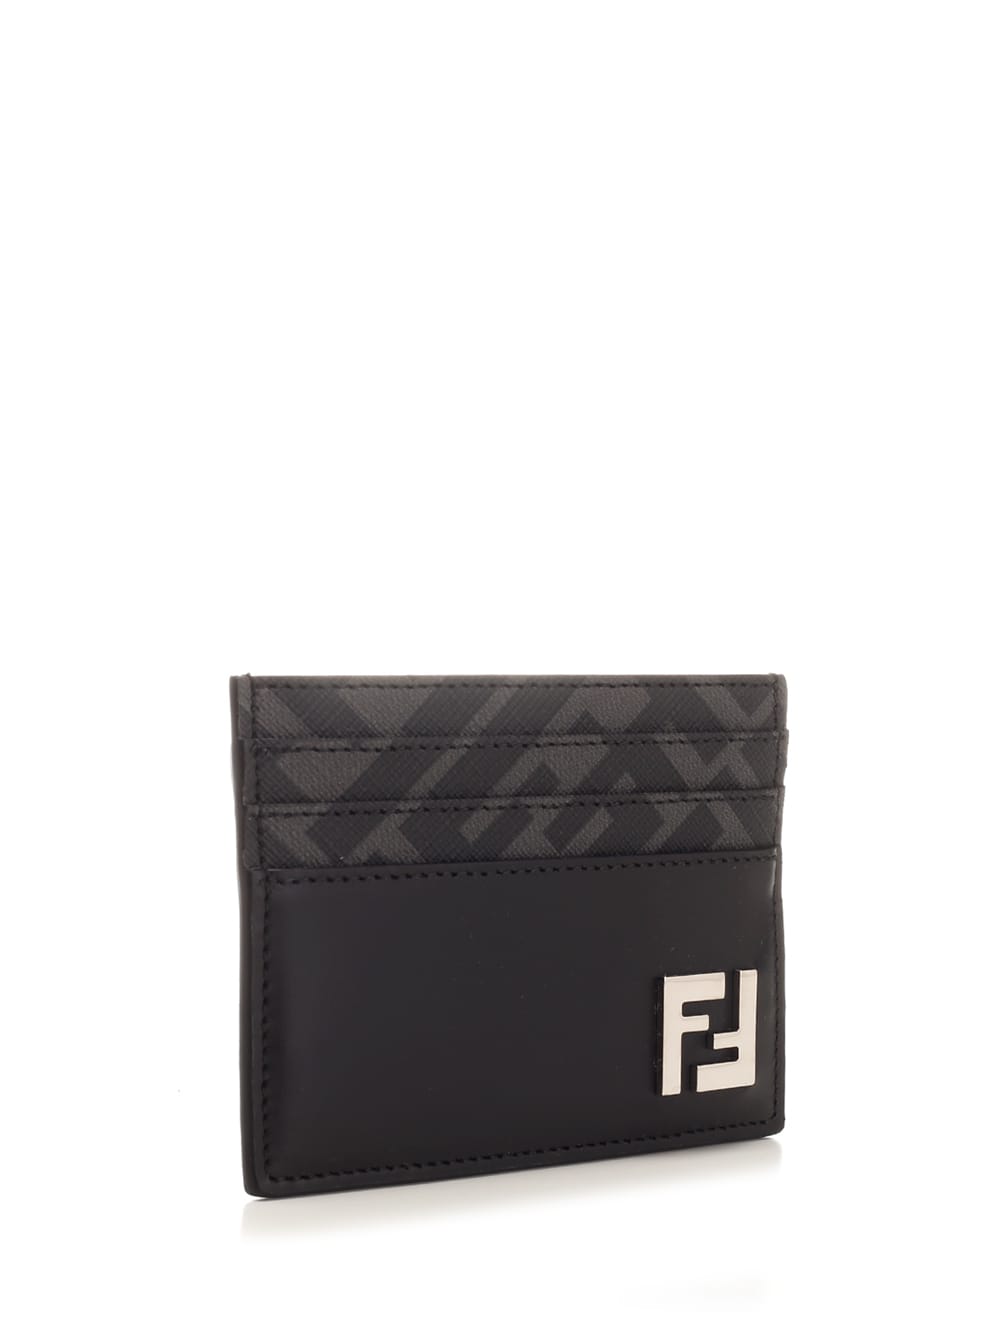 Shop Fendi Black Ff Squared Card Holder